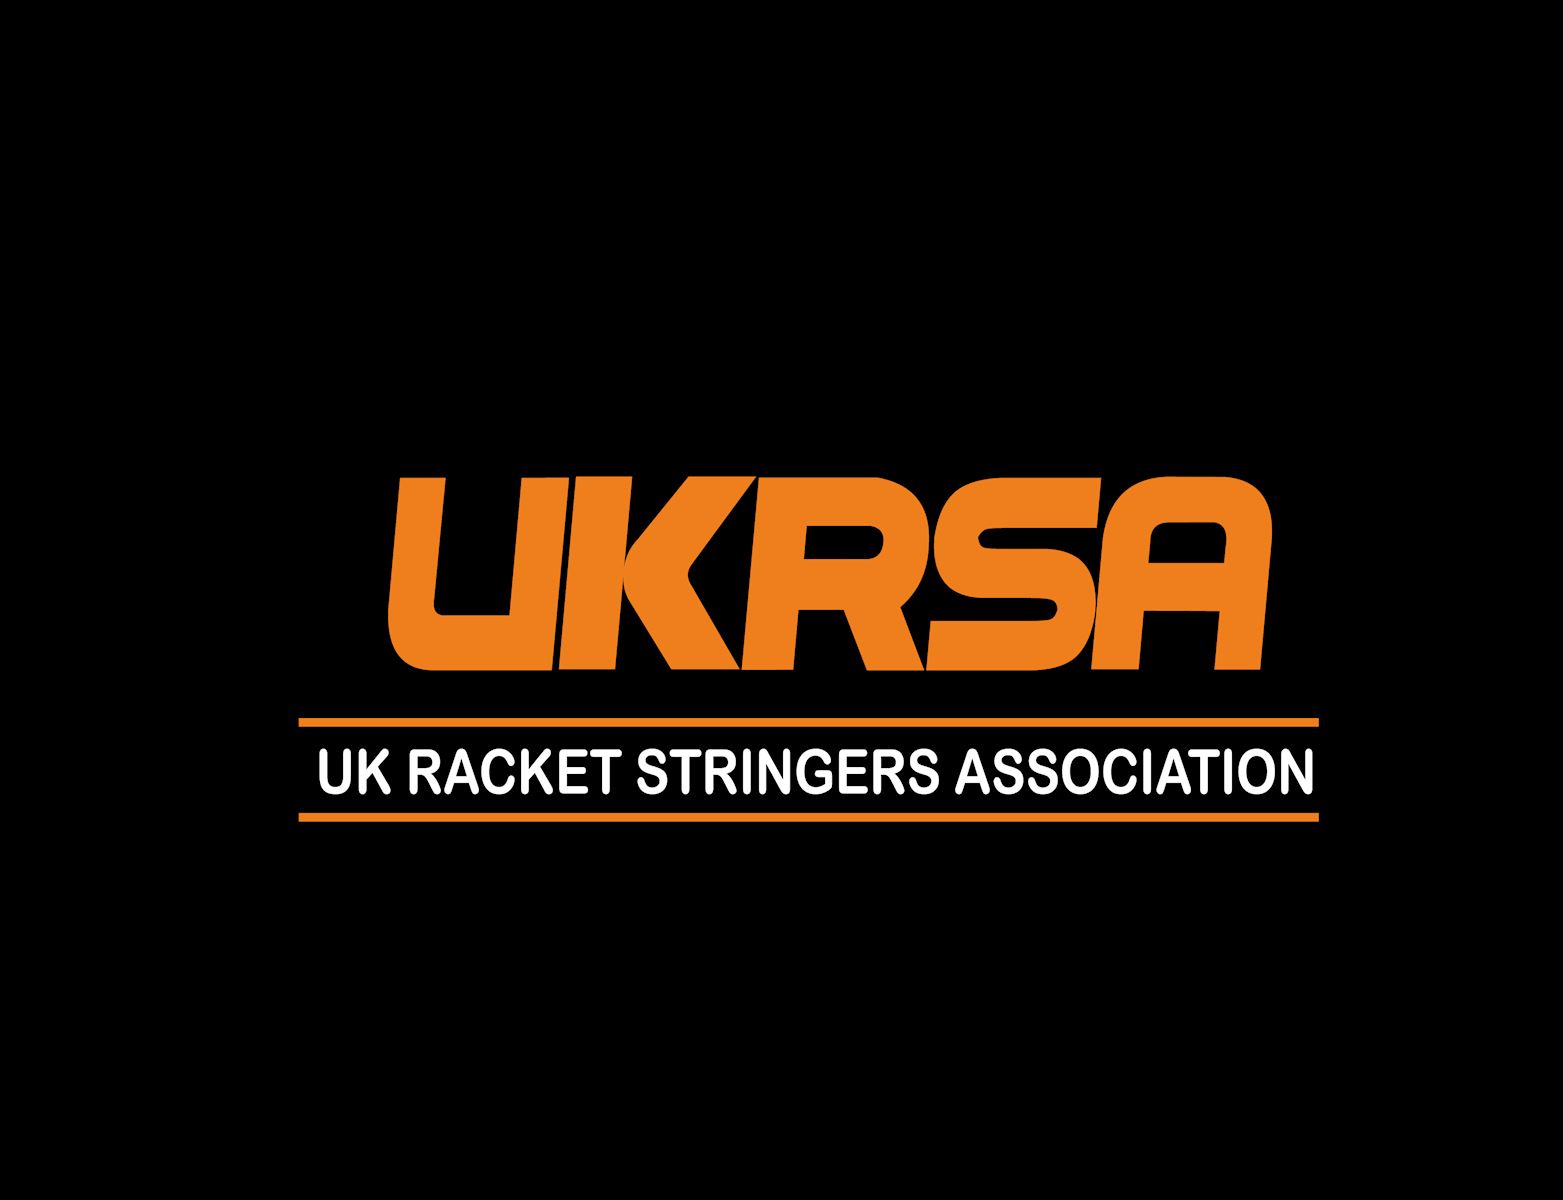 UK Racket Stringers Association